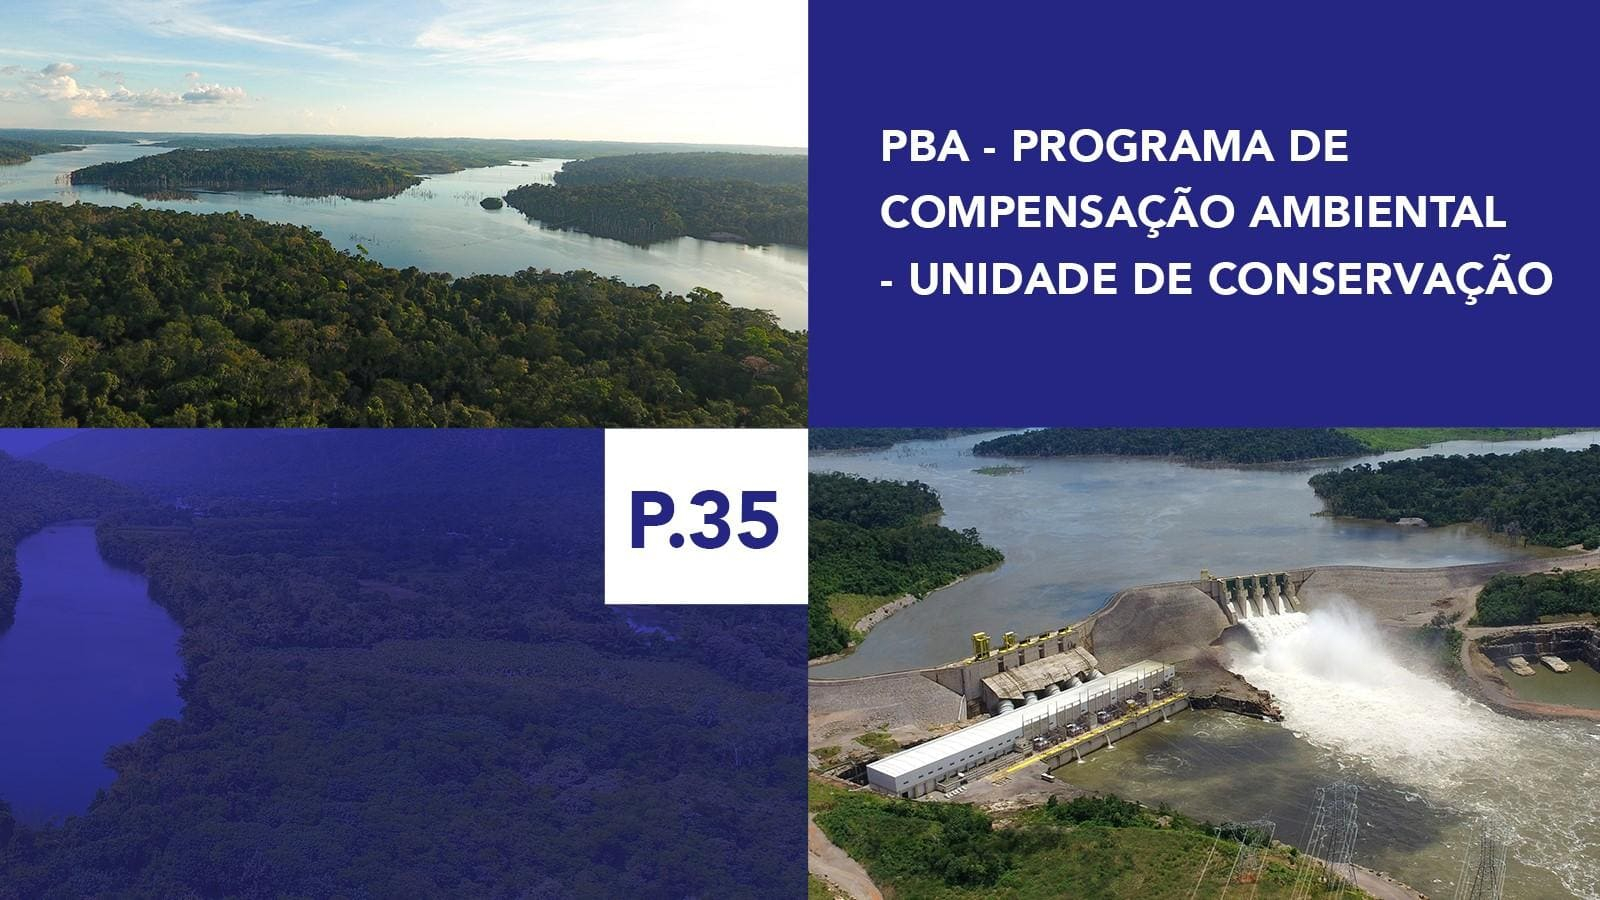 P.35 - Programa de Compensação Ambiental - Unidade de Conservação